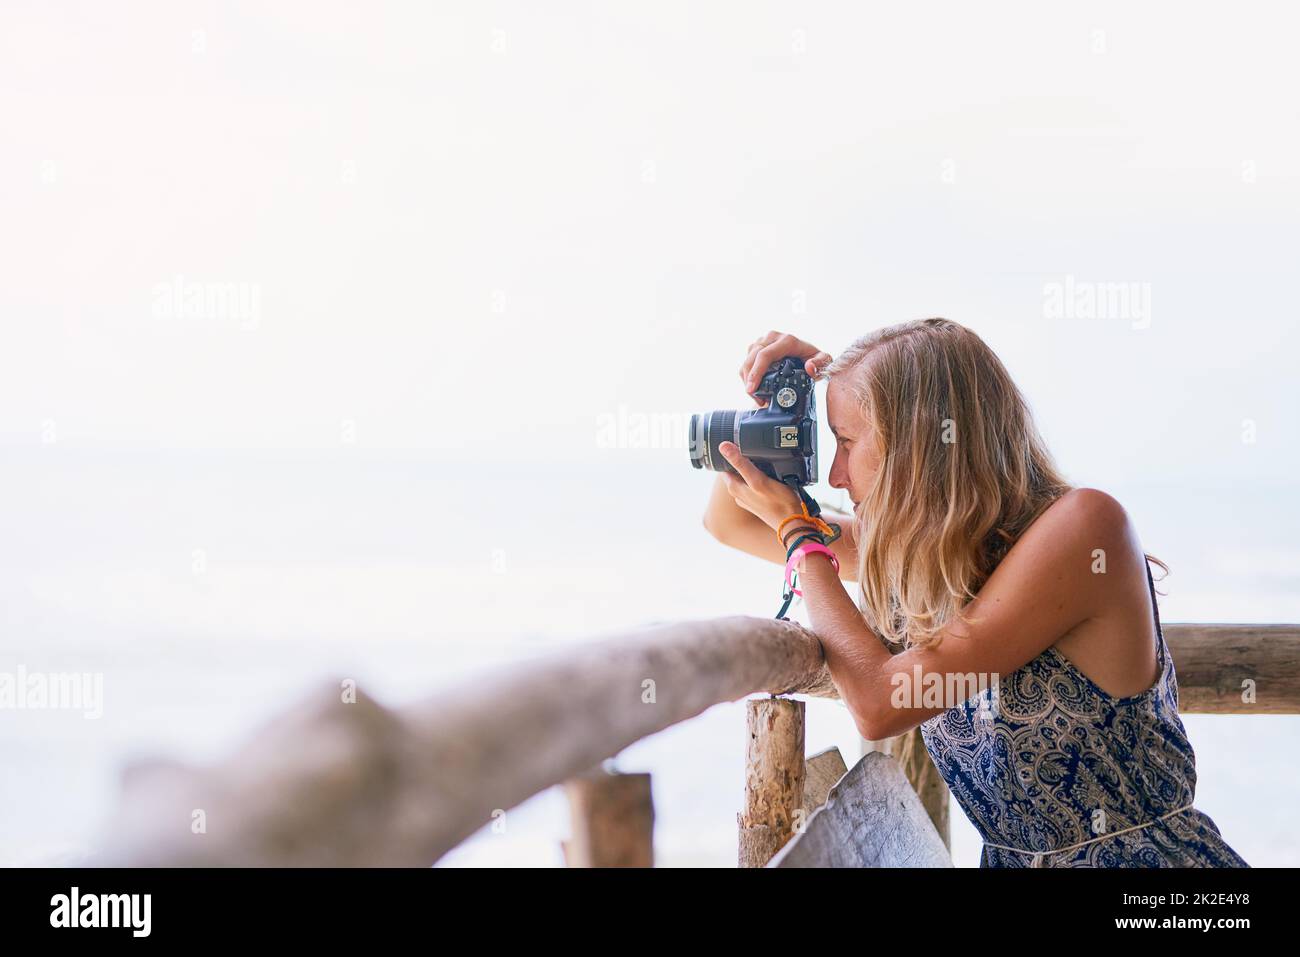 Das perfekte Urlaubsfoto einrahmen. Aufnahme einer jungen Frau, die während eines Urlaubs in Thailand Fotos gemacht hat. Stockfoto